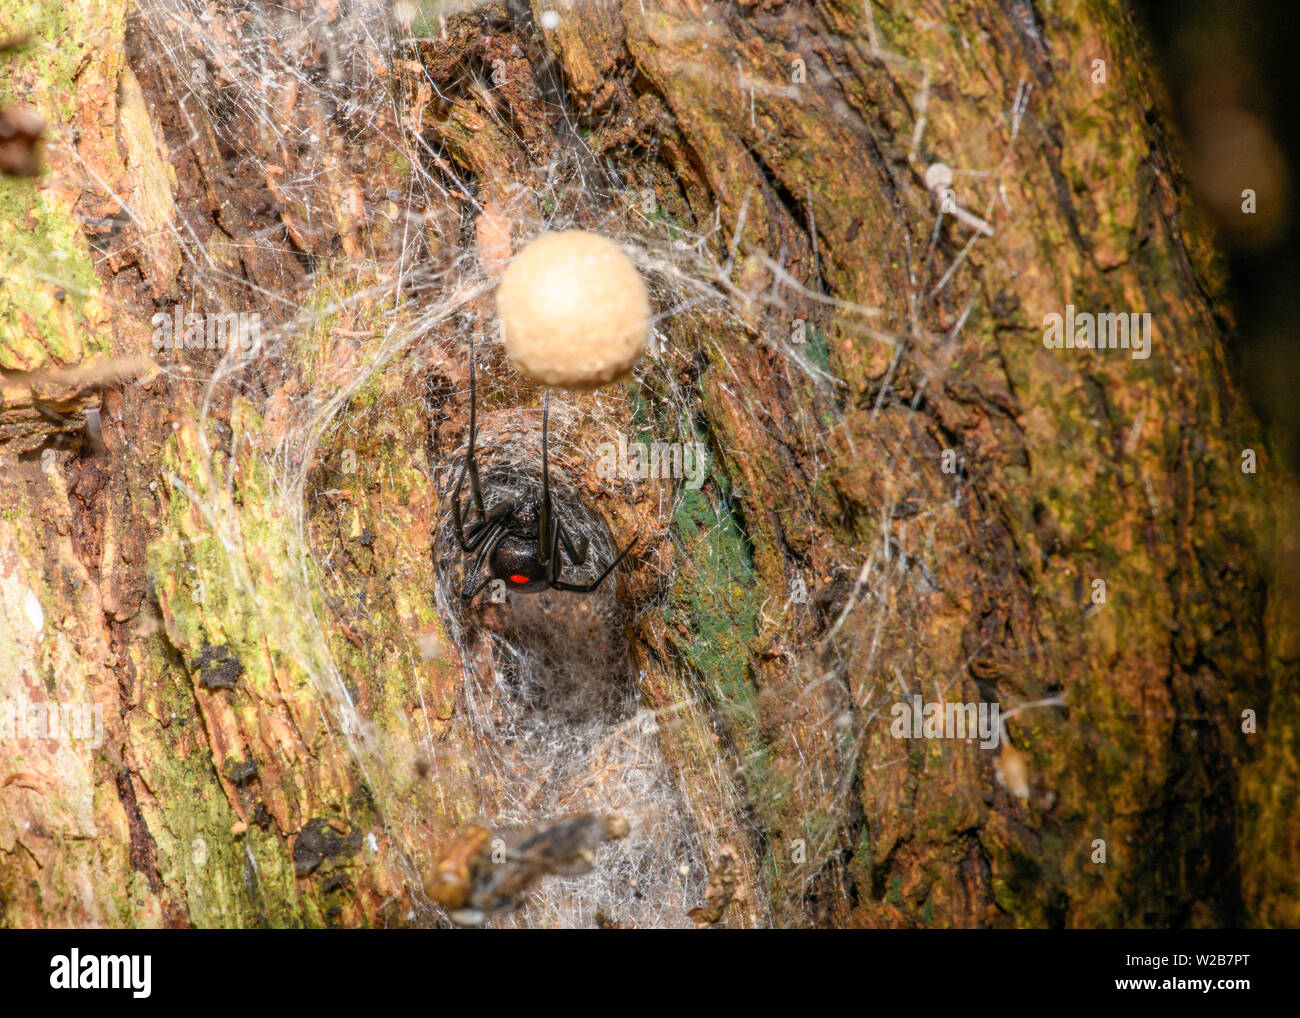 Südliche Schwarze Witwe (Latrodectus mactans) oder Schuh - Taste Spinne, ihr Ei sack Bewachung Stockfoto